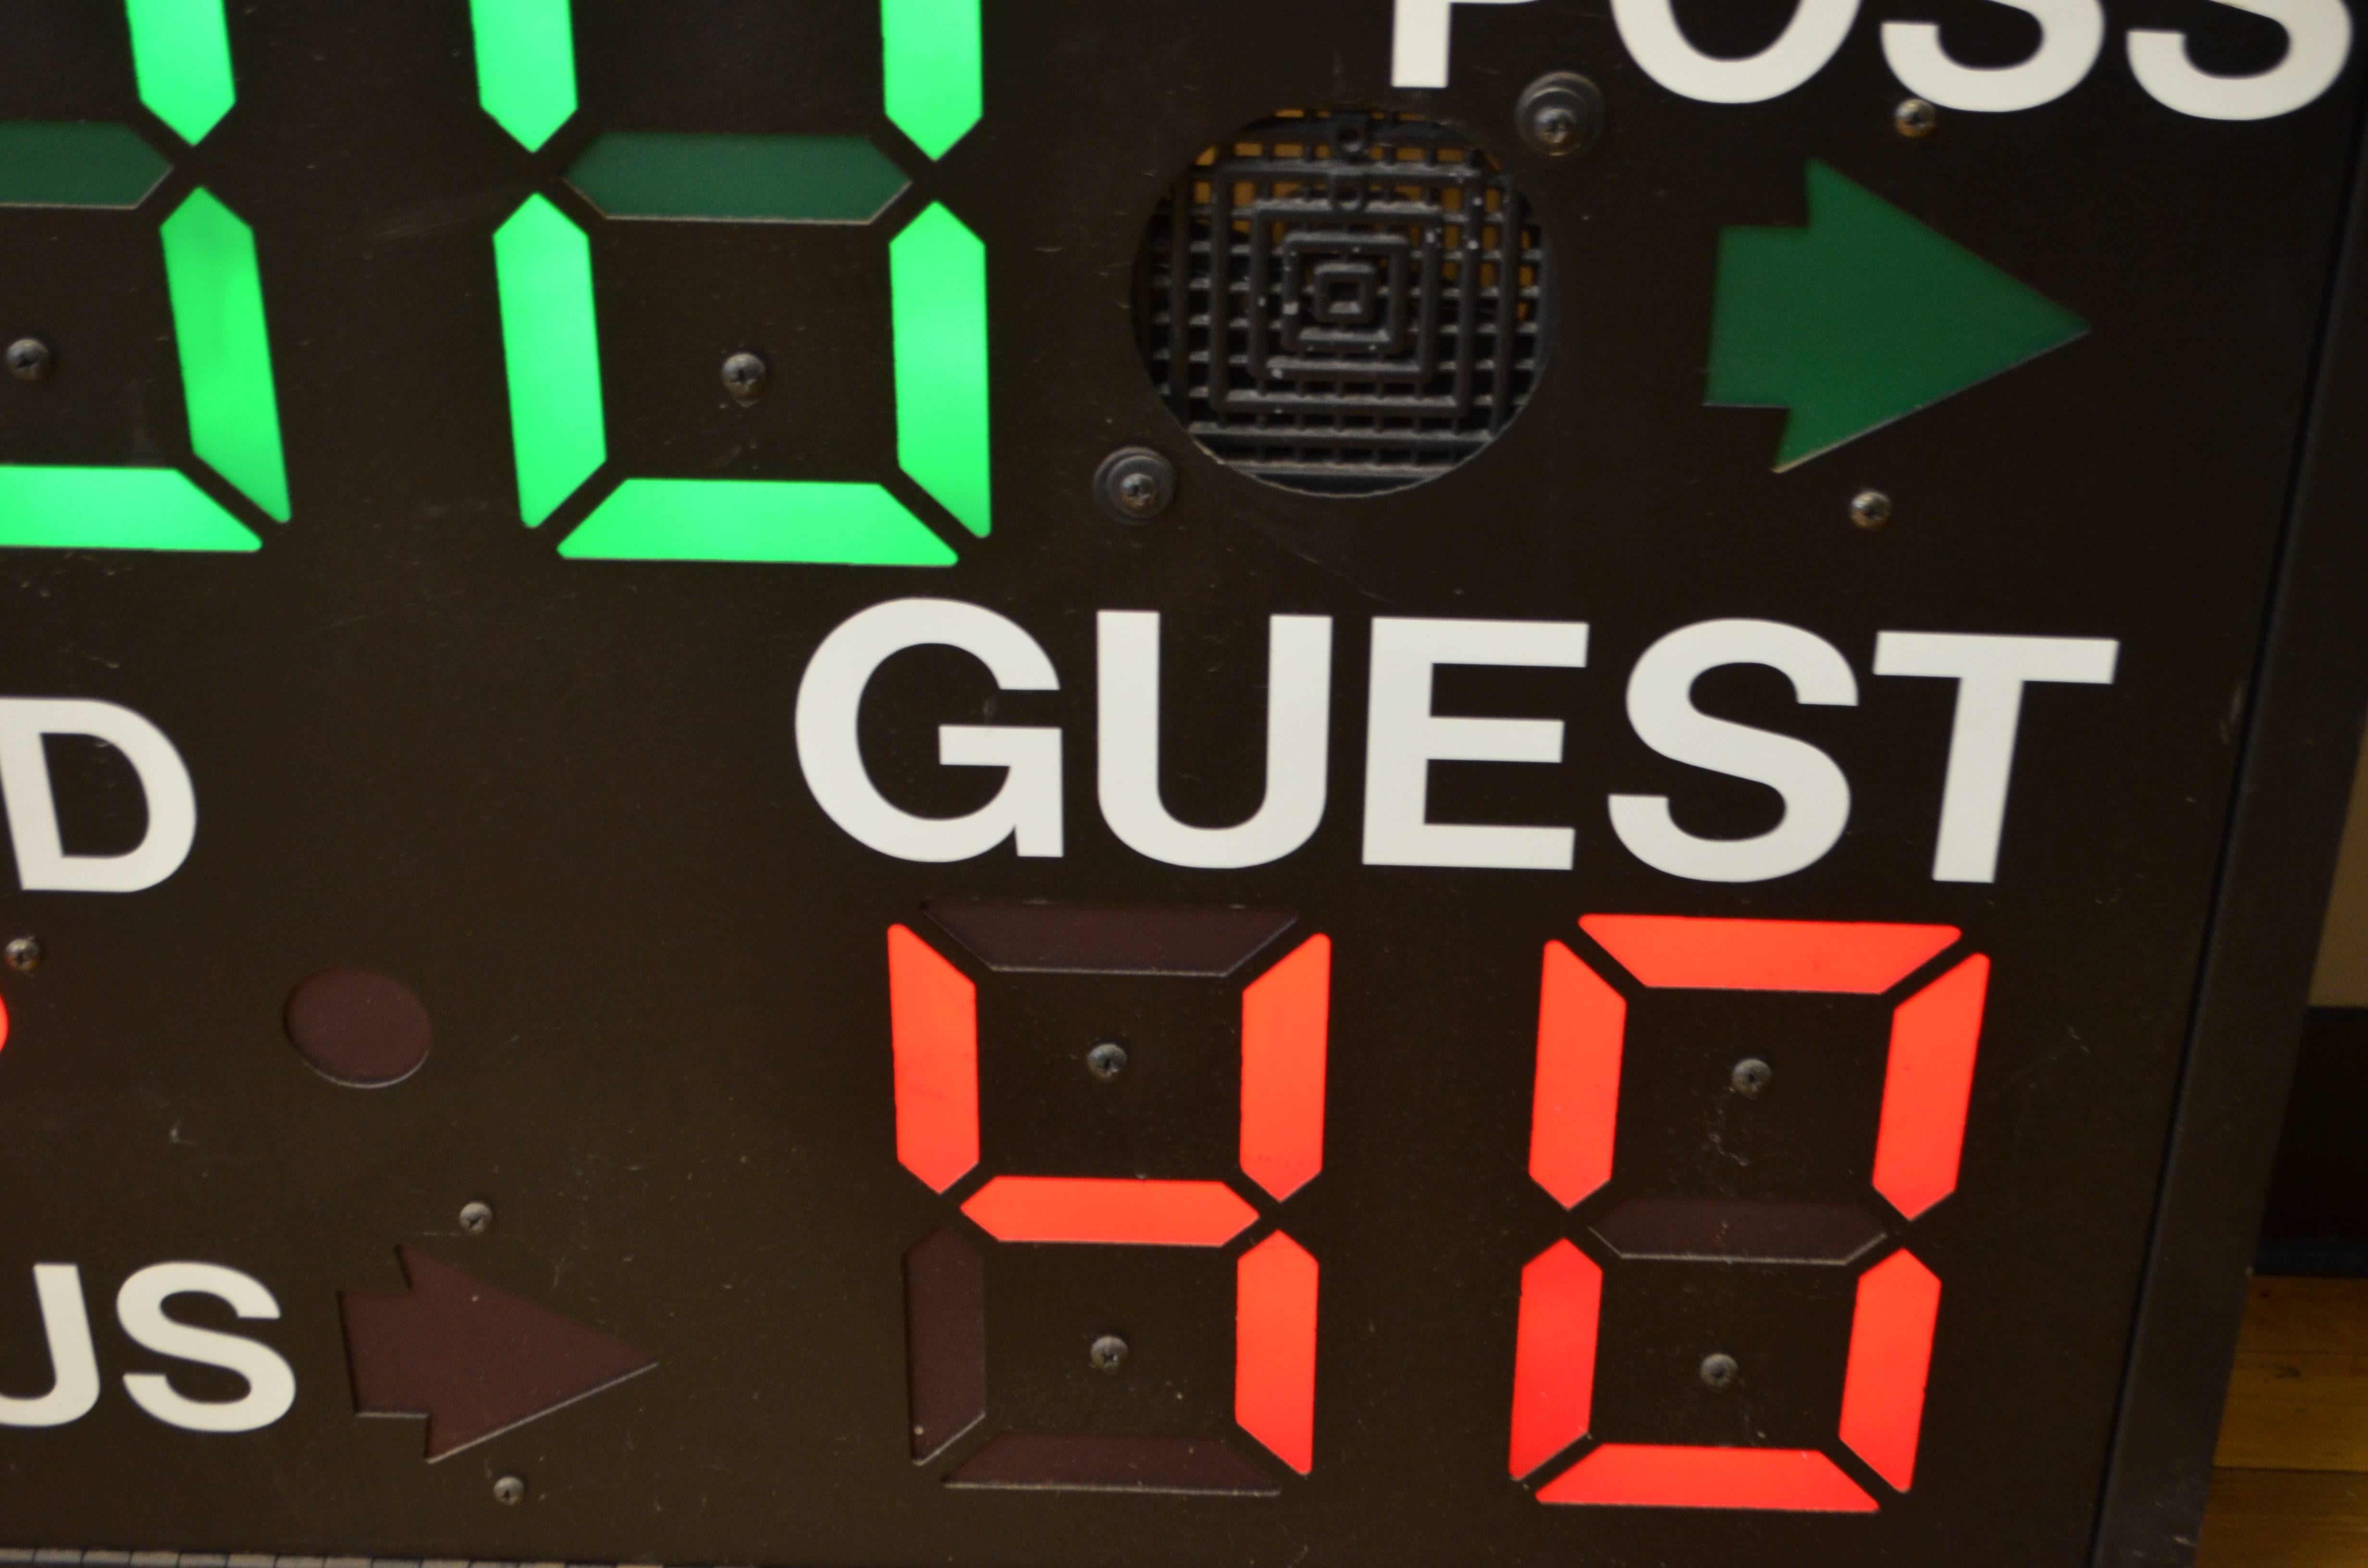 wall mounted basketball scoreboard